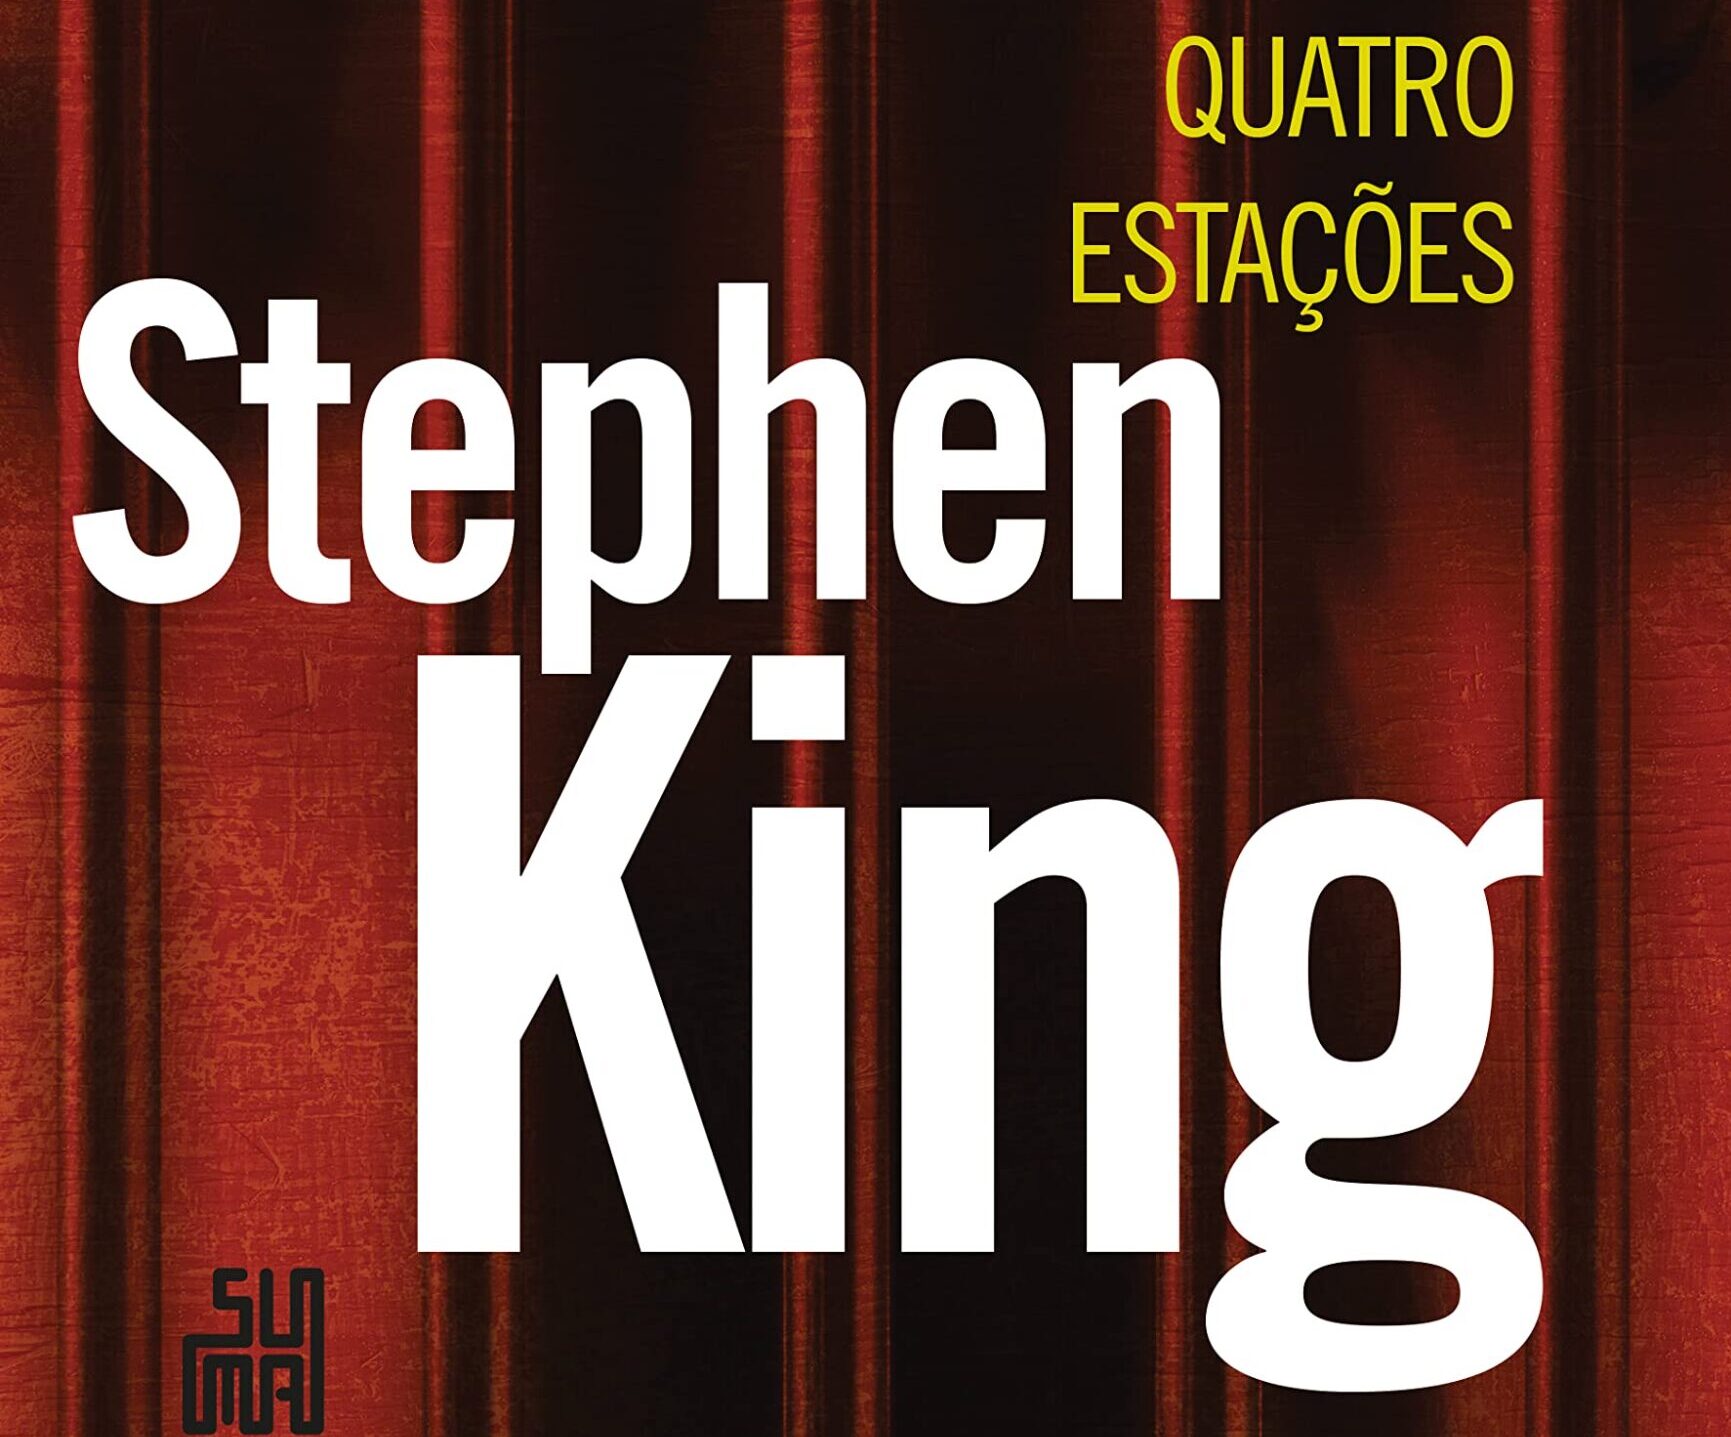 Quatro Estações: Resenha do livro de contos de Stephen King 3